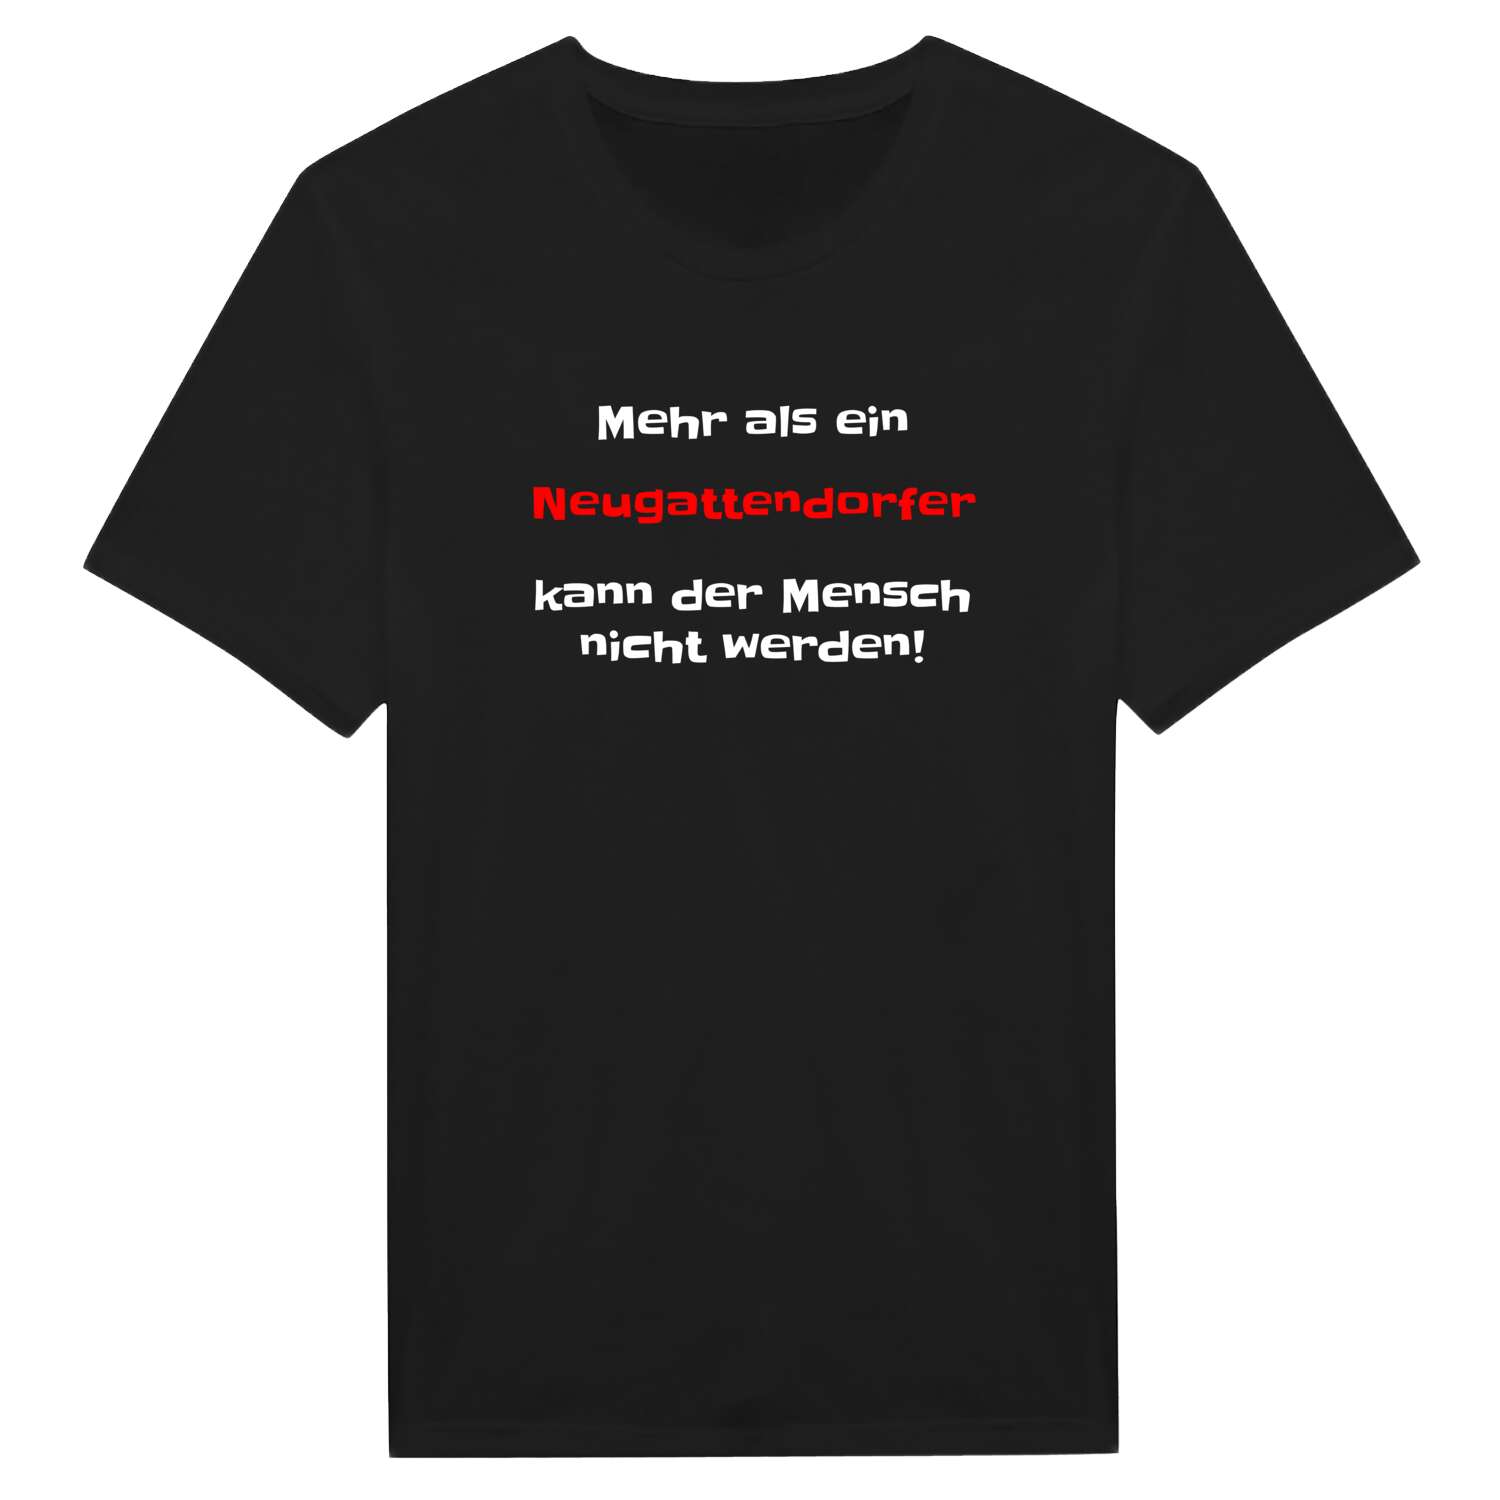 Neugattendorf T-Shirt »Mehr als ein«